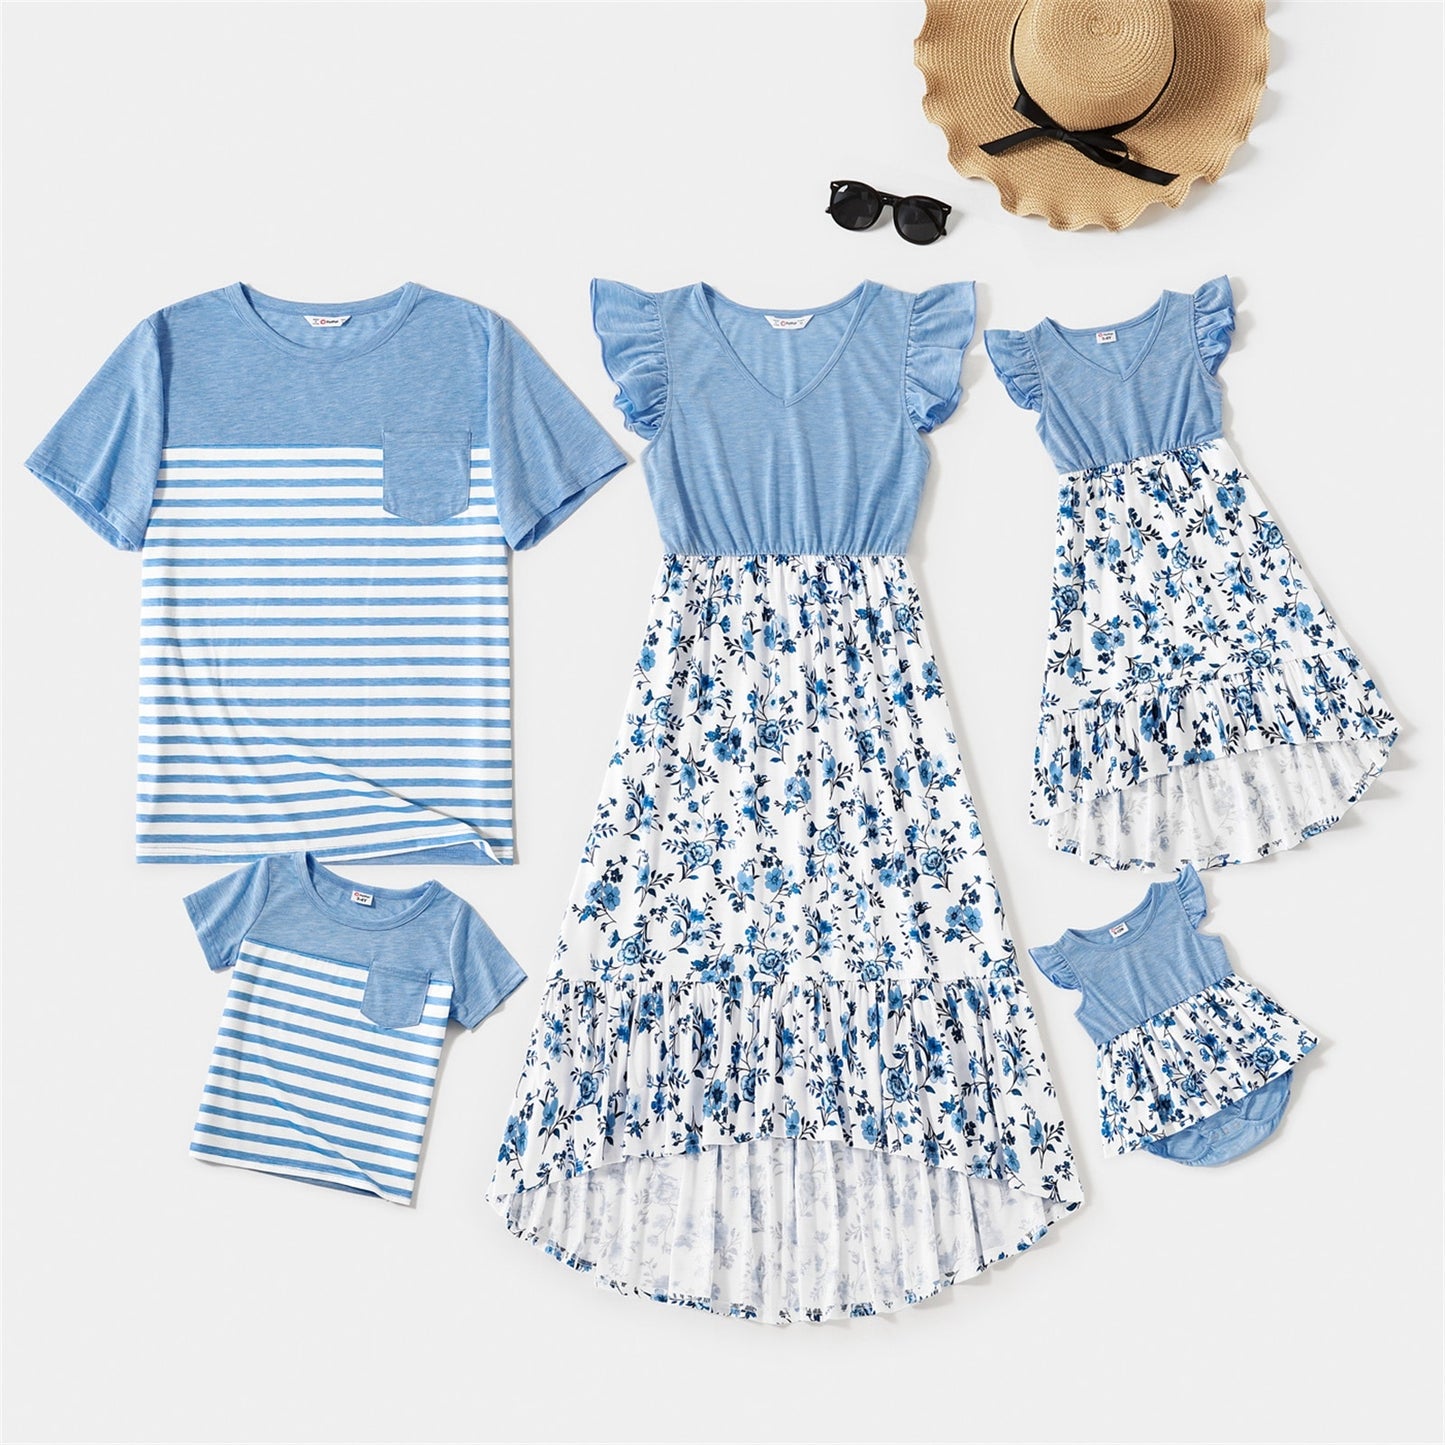 PatPat Family Matching Light Blue V Neck Flutter-sleeve Splicing Floral Print Irregular Hem Dresses and Striped T-shirts Sets